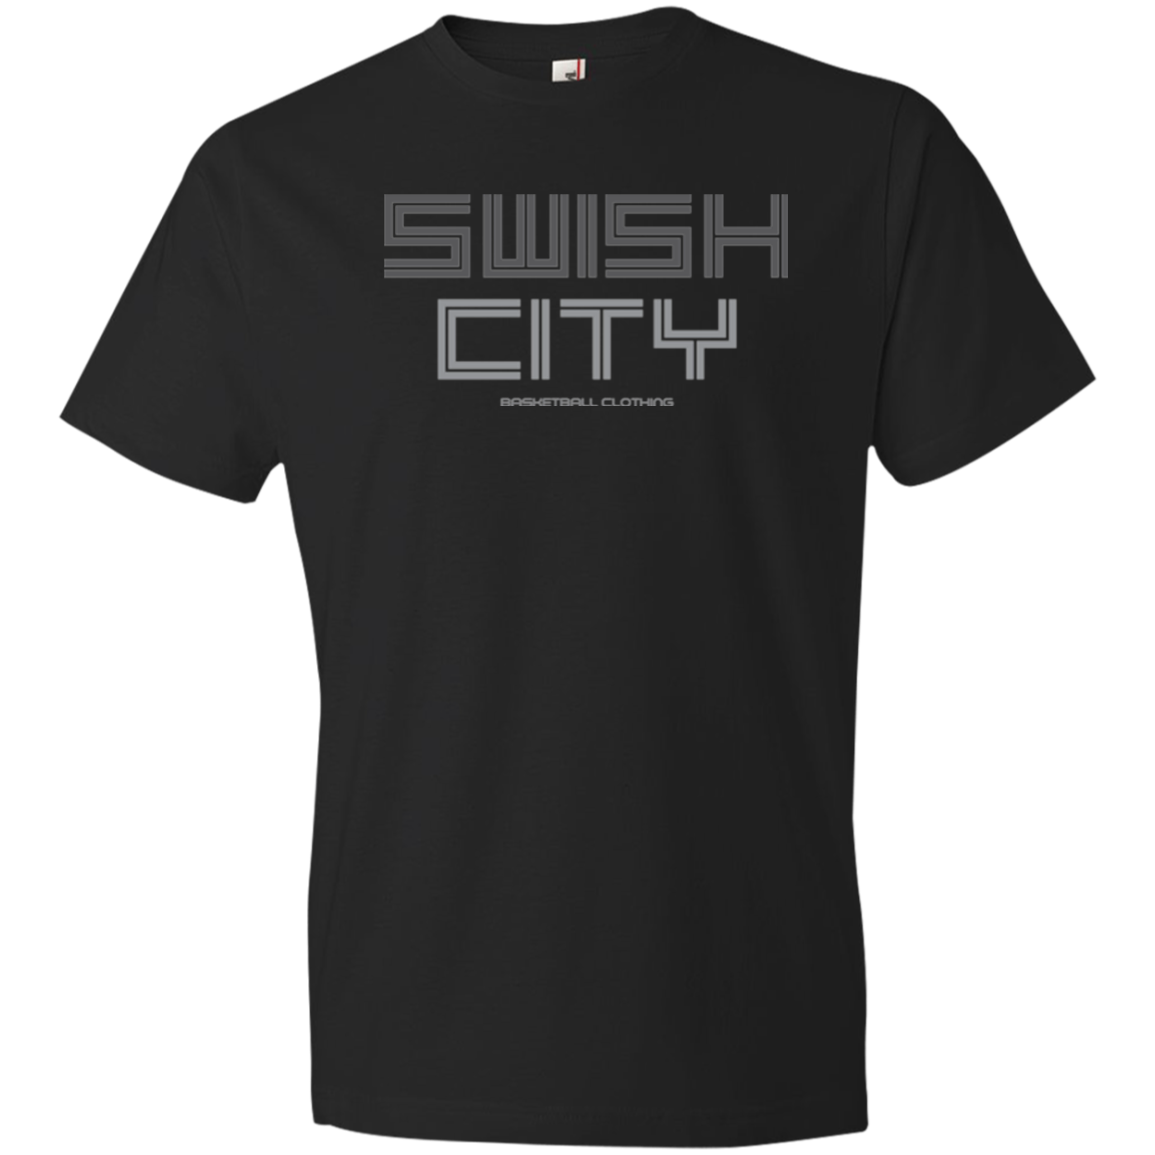 Swish City Men's T-Shirt!